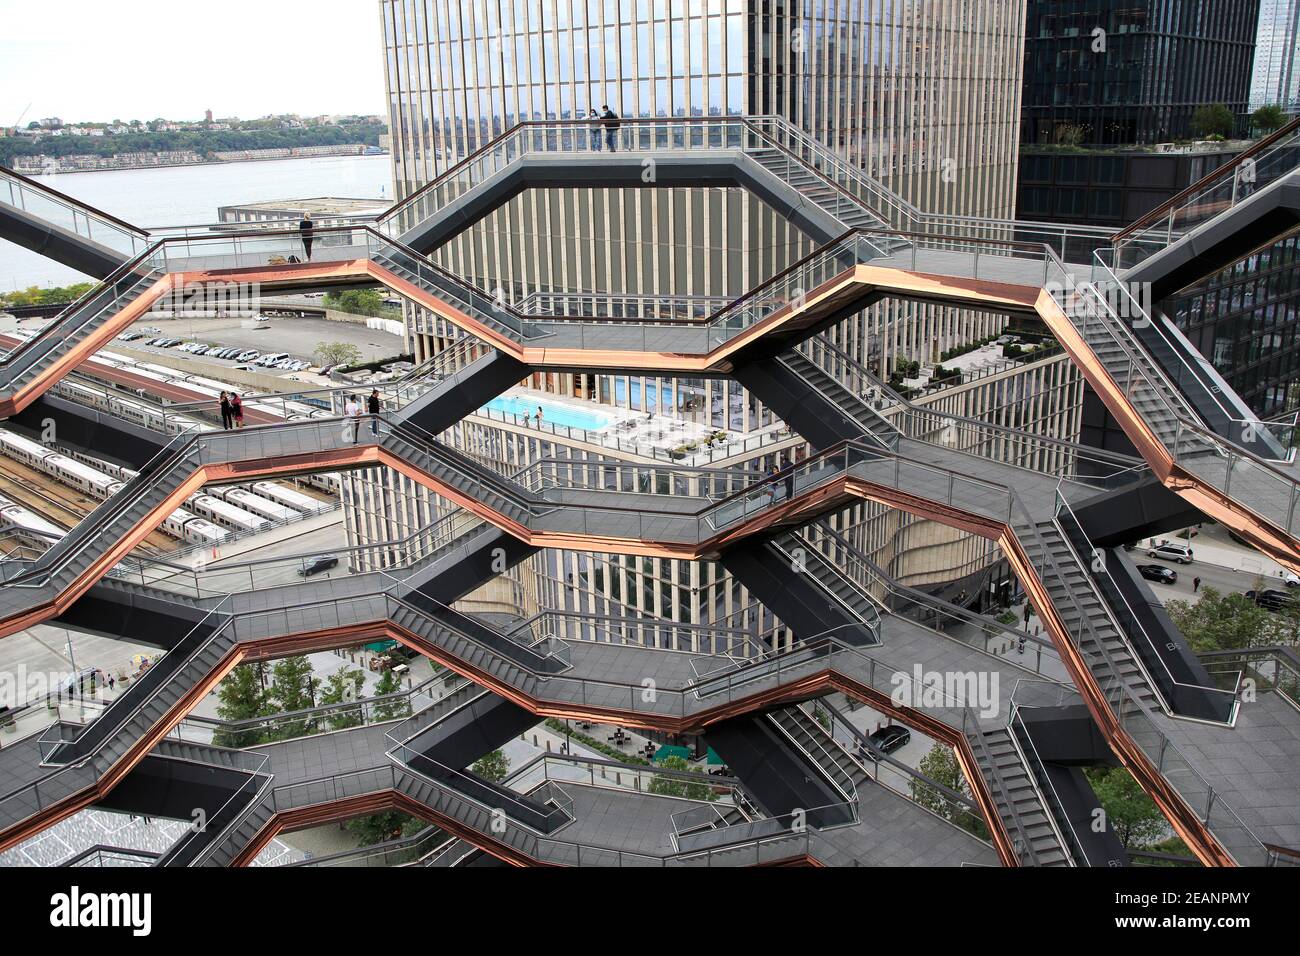 Interieur, das Schiff, Treppe, Hudson Yards, Manhattan, New York City, New York, Vereinigte Staaten von Amerika, Nordamerika Stockfoto